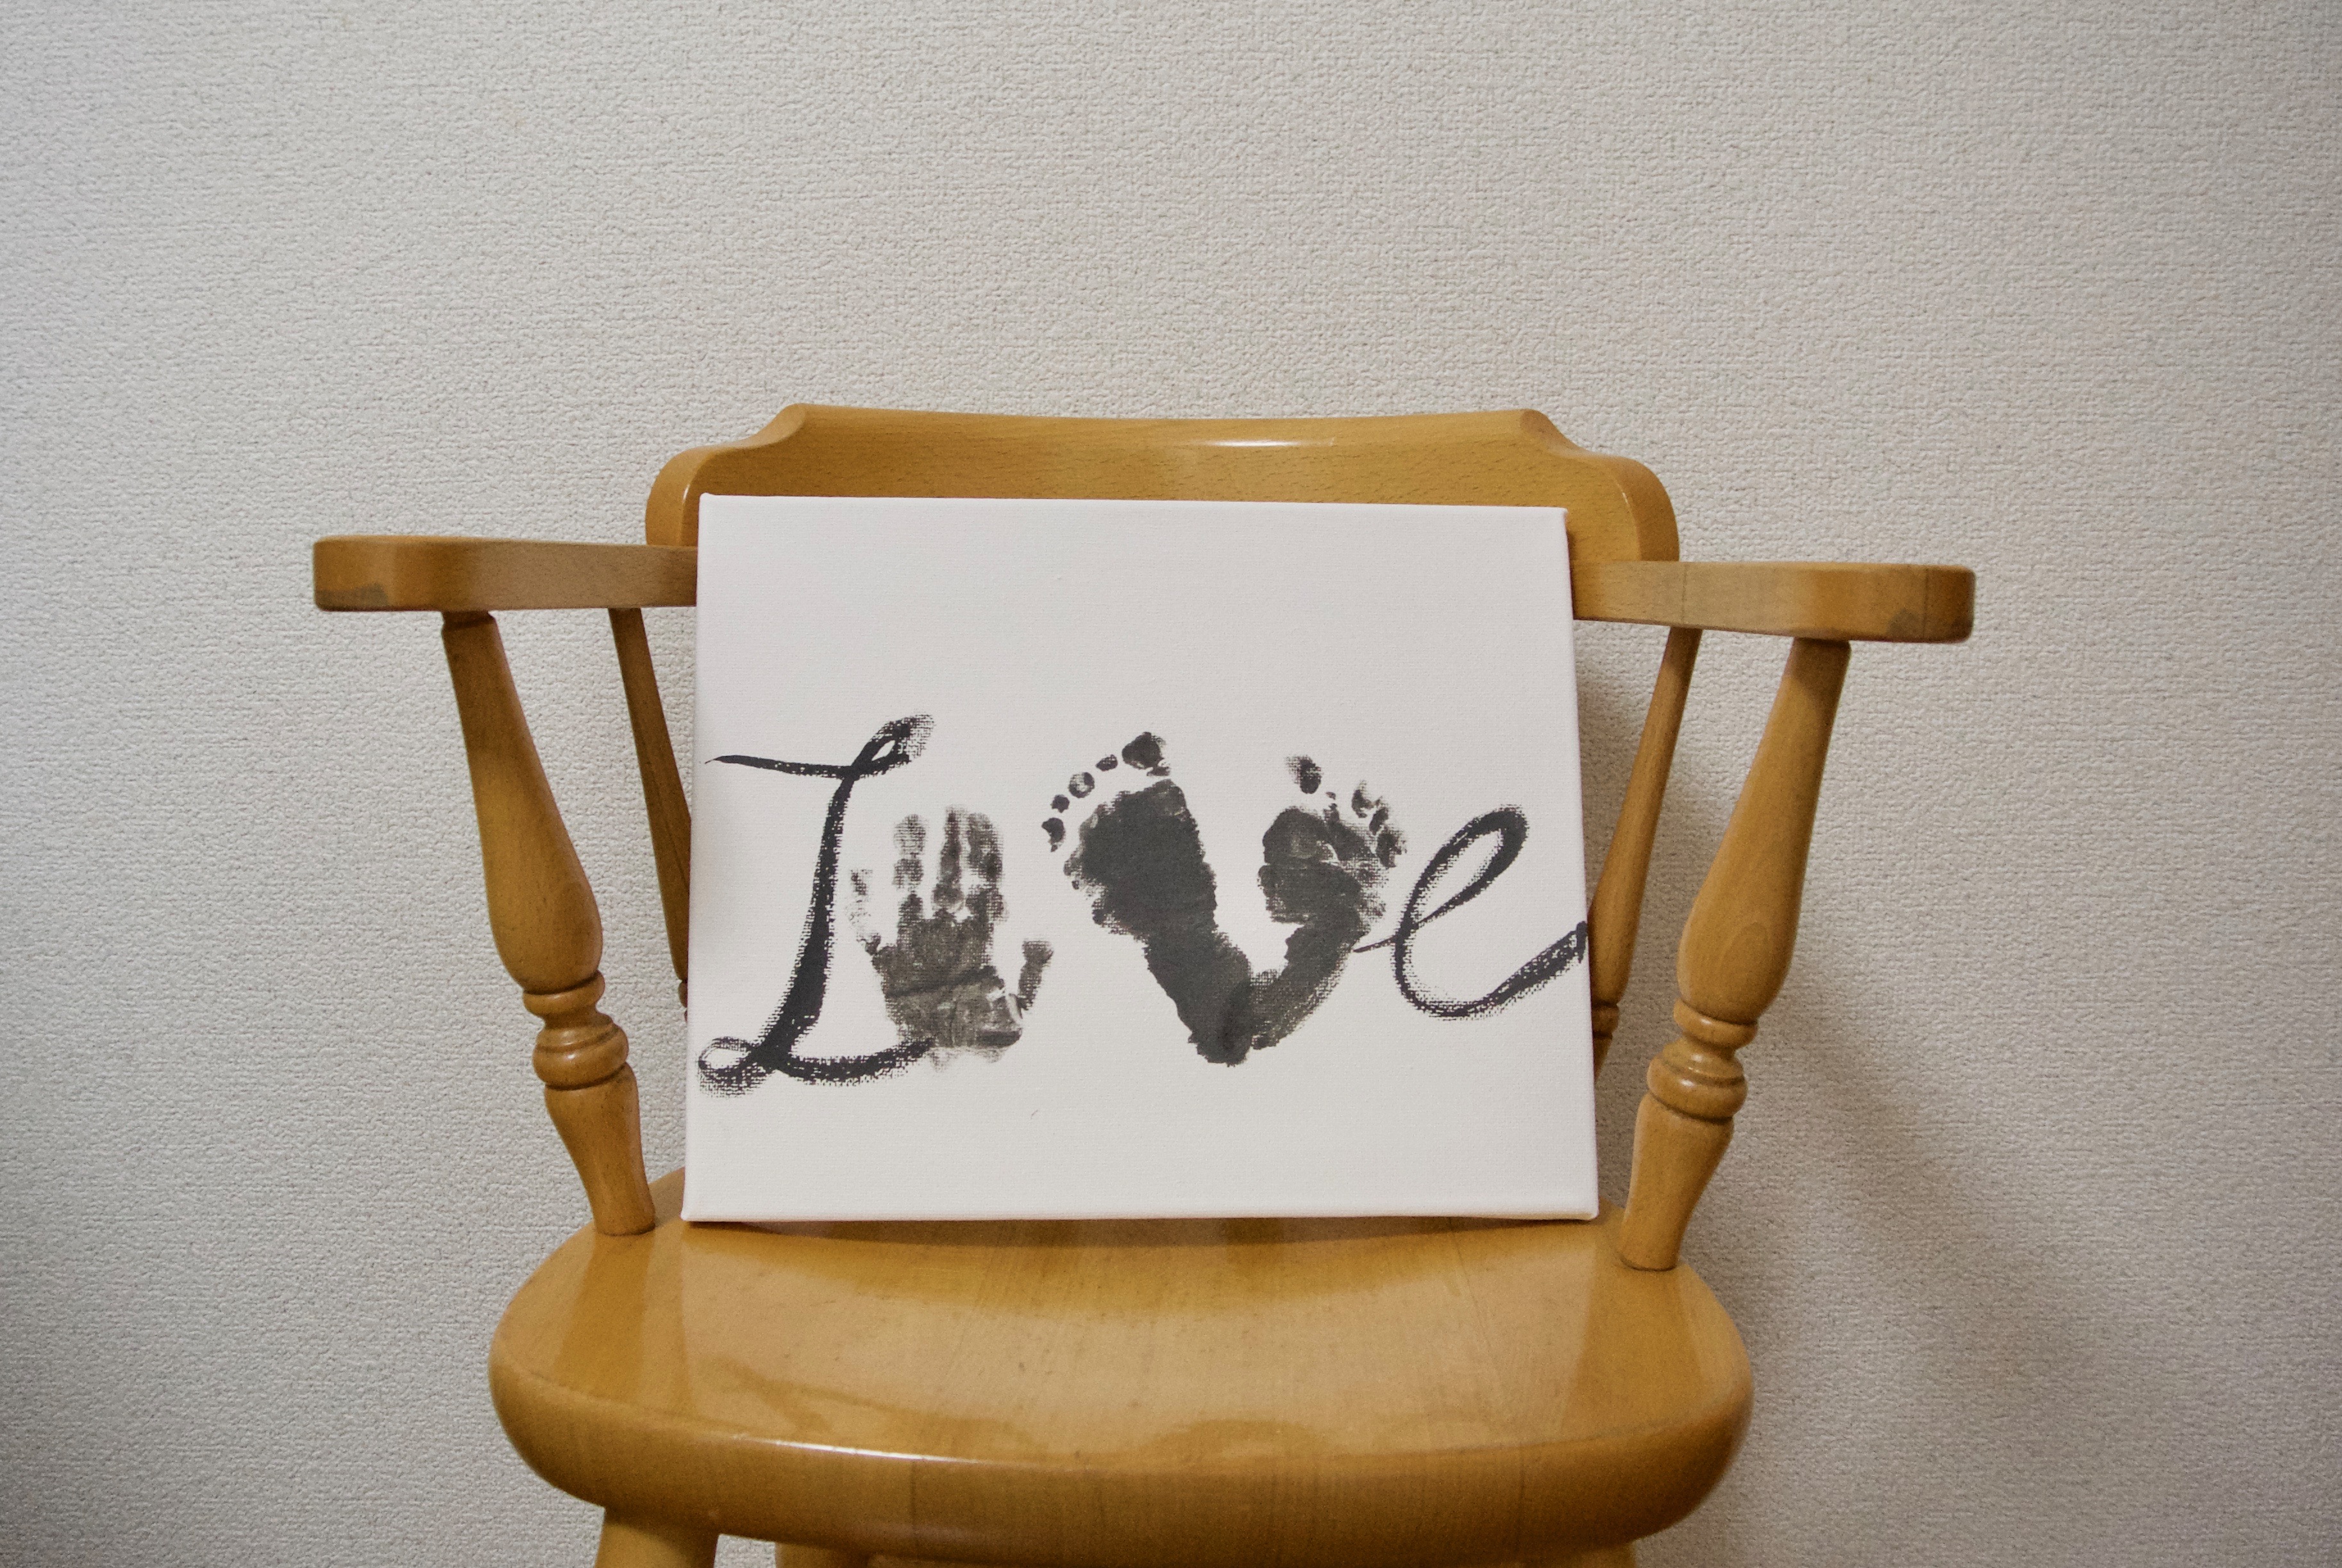 成長の記念を形に 赤ちゃんの 手形 足形 をアートに残すアイディア Arch Days